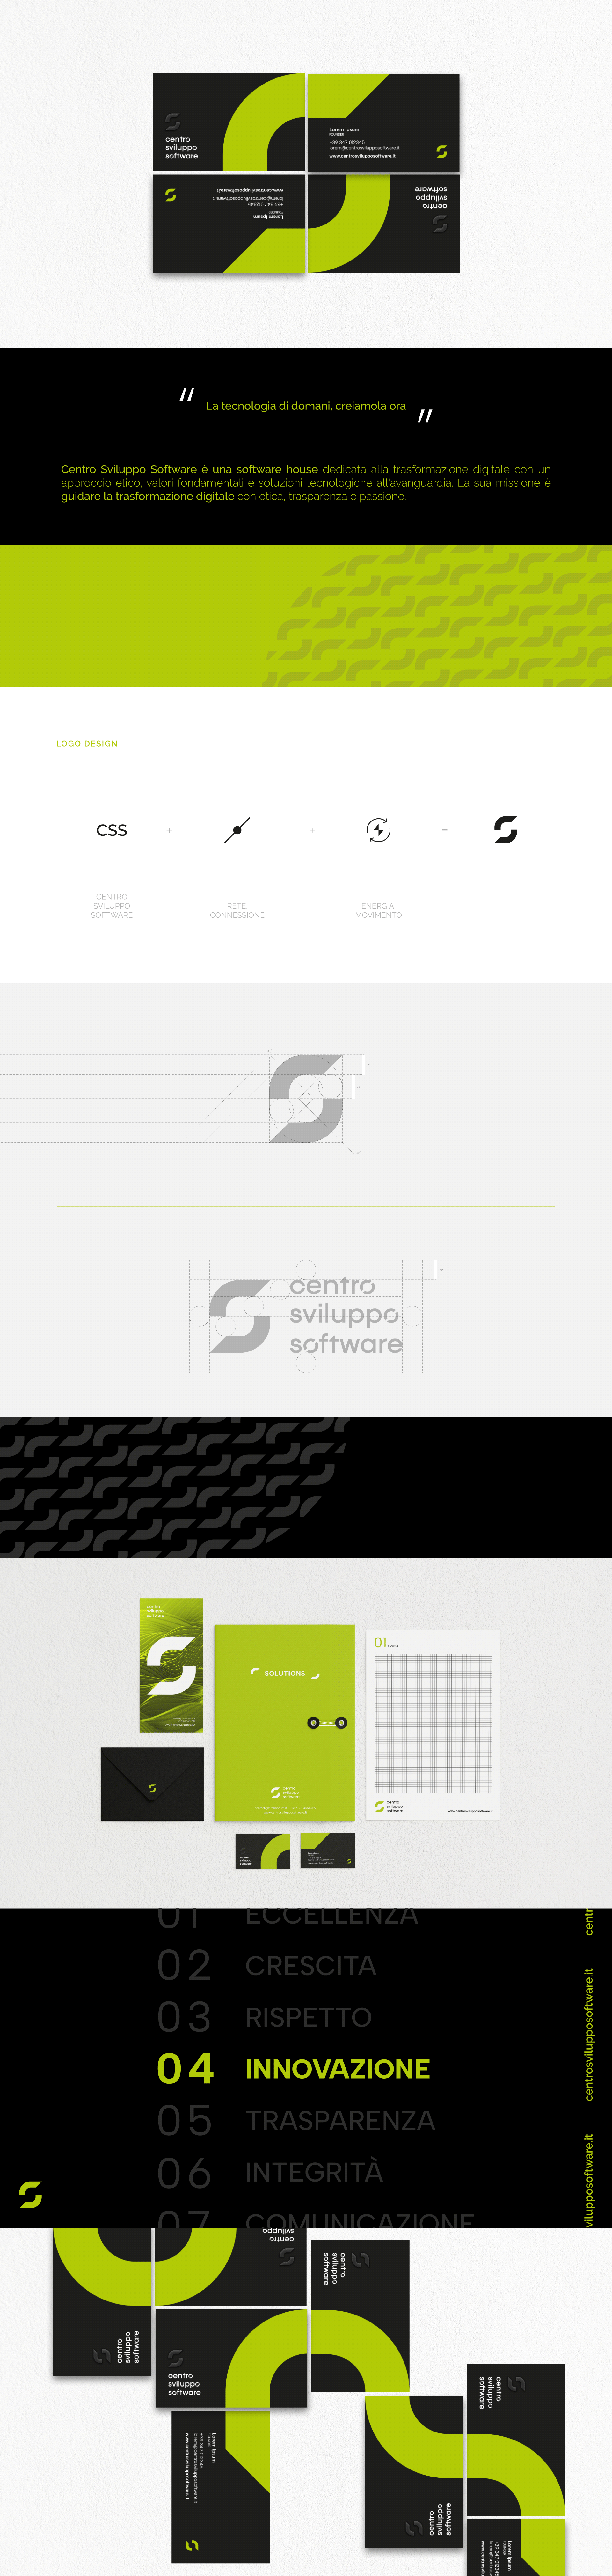 Centro sviluppo software thinkuplab - software house genova - logo design progettazione grafica